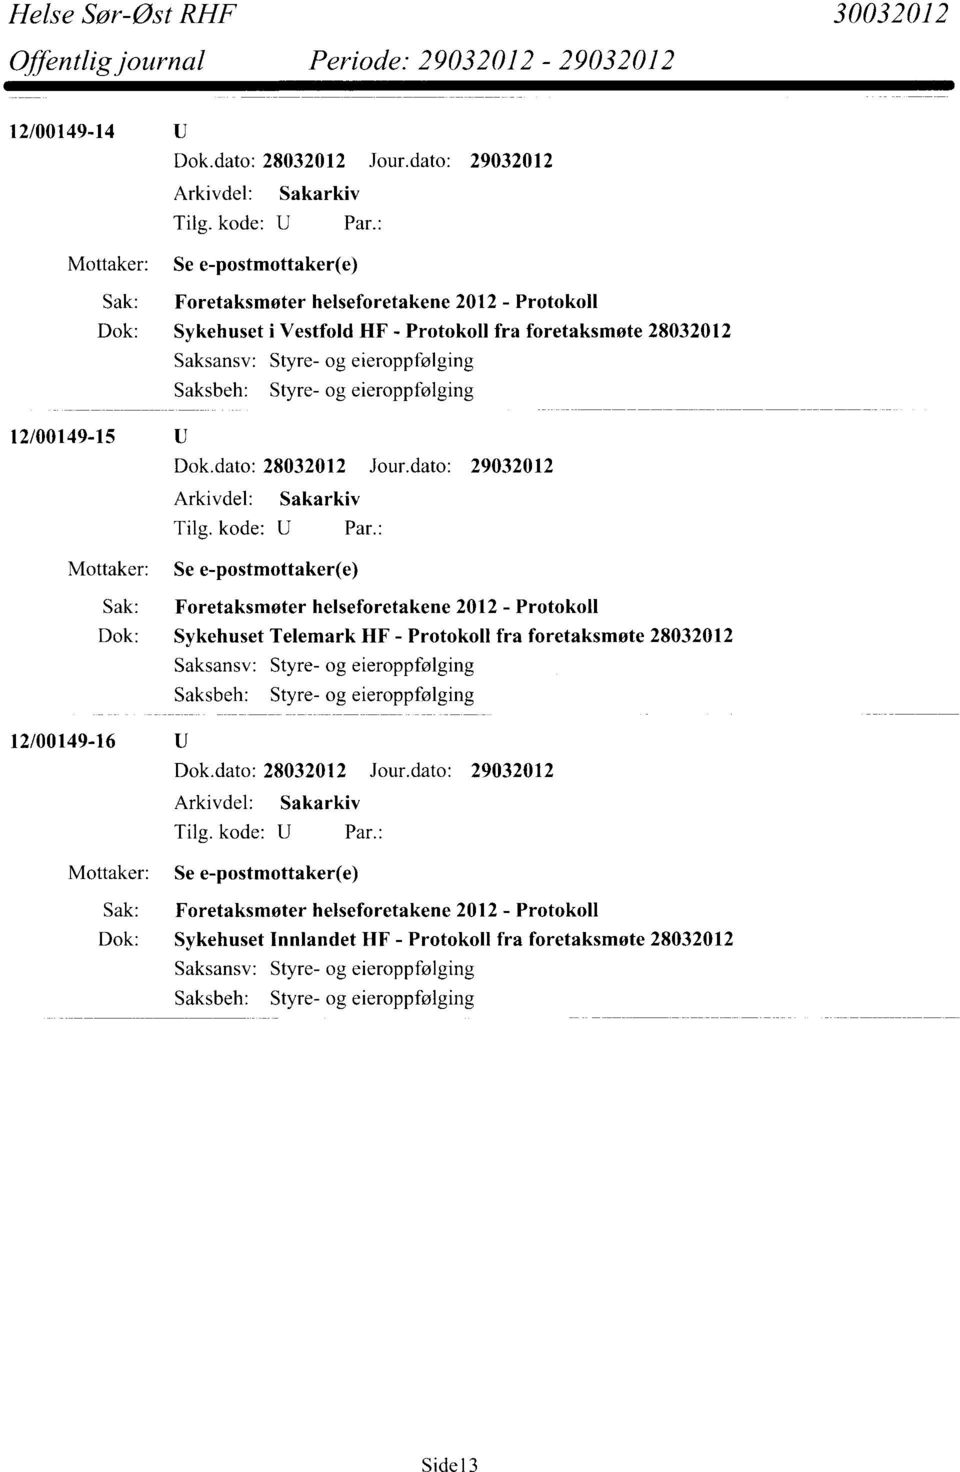 Protokoll Dok: Sykehuset Telemark HF - Protokoll fra foretaksmøte 28032012 Saksansv: Styre- og eieroppfølging Styre- og eieroppfølging 12/00149-16 Mottaker: Se